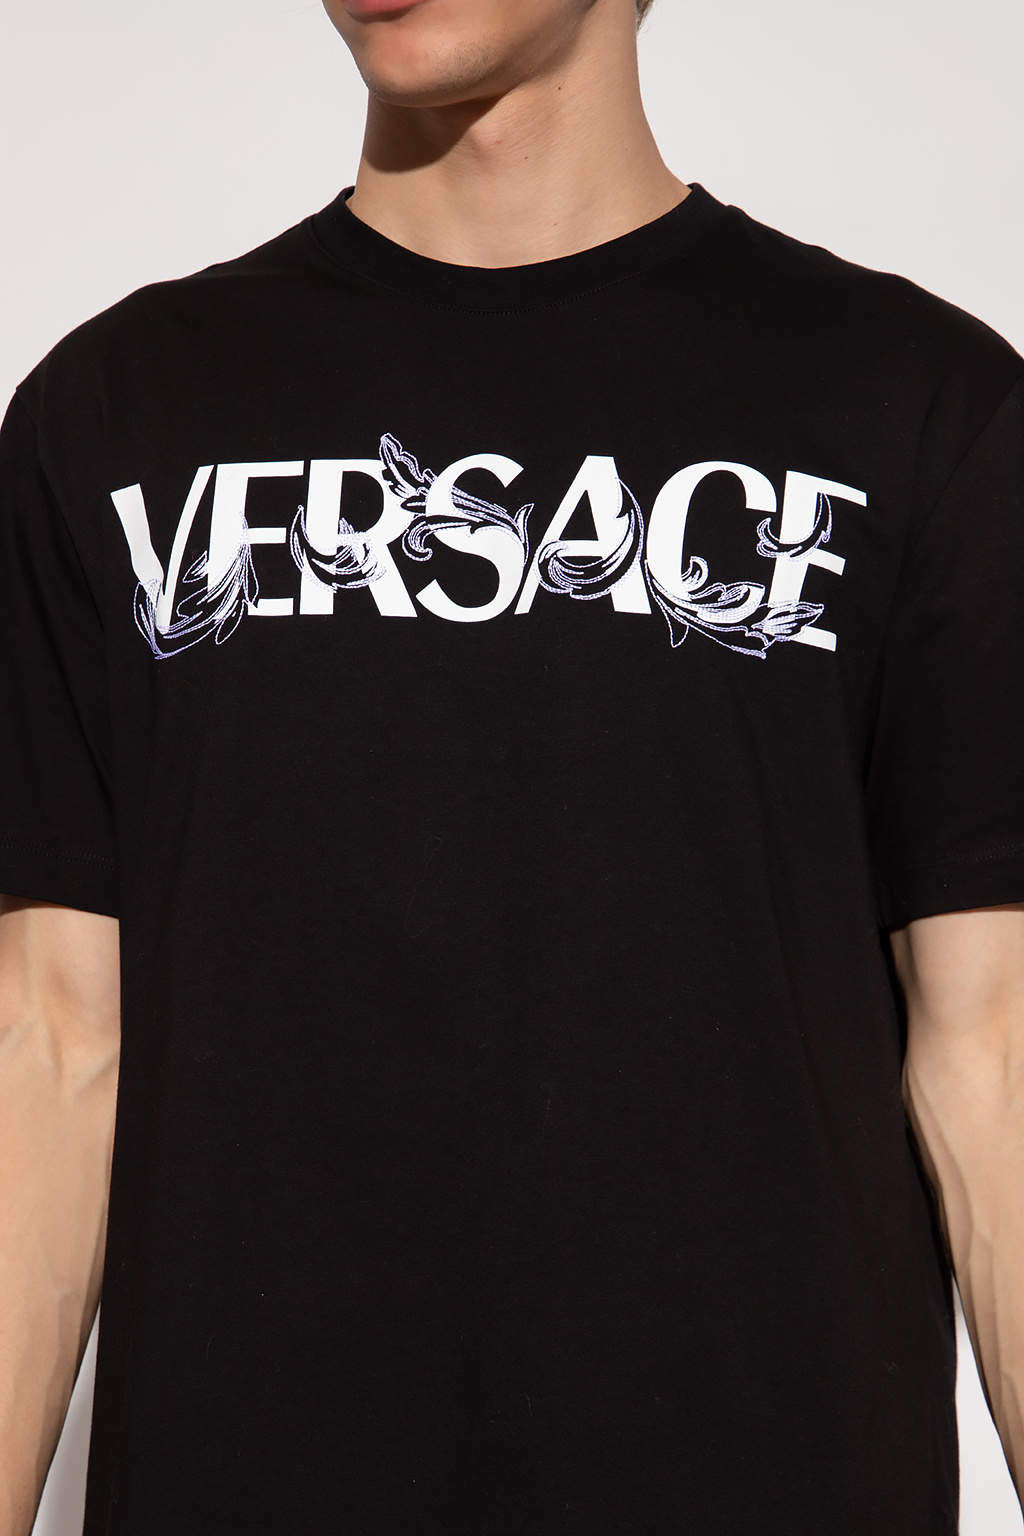 Versace jefferson short sleeve shirt